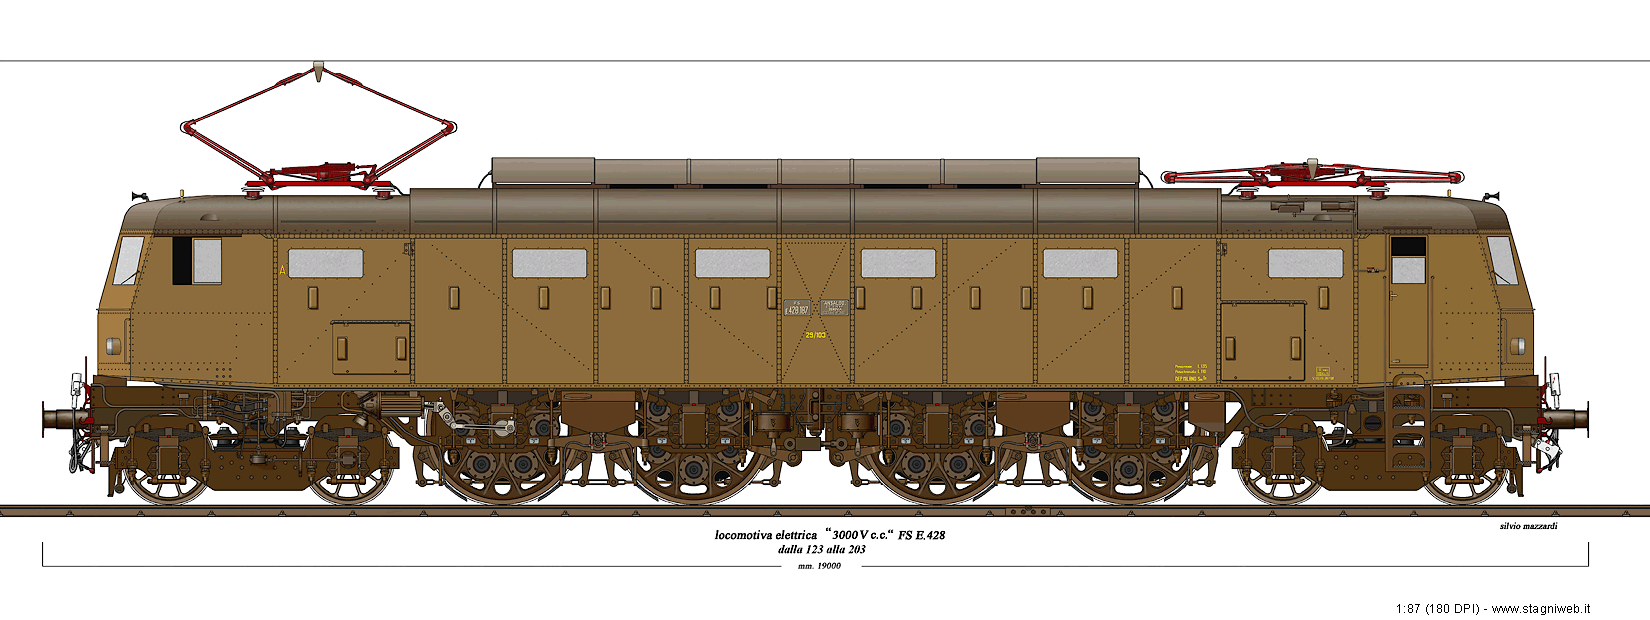 Tutto Treno 138 2001 Elaborazione locomotiva E 428 